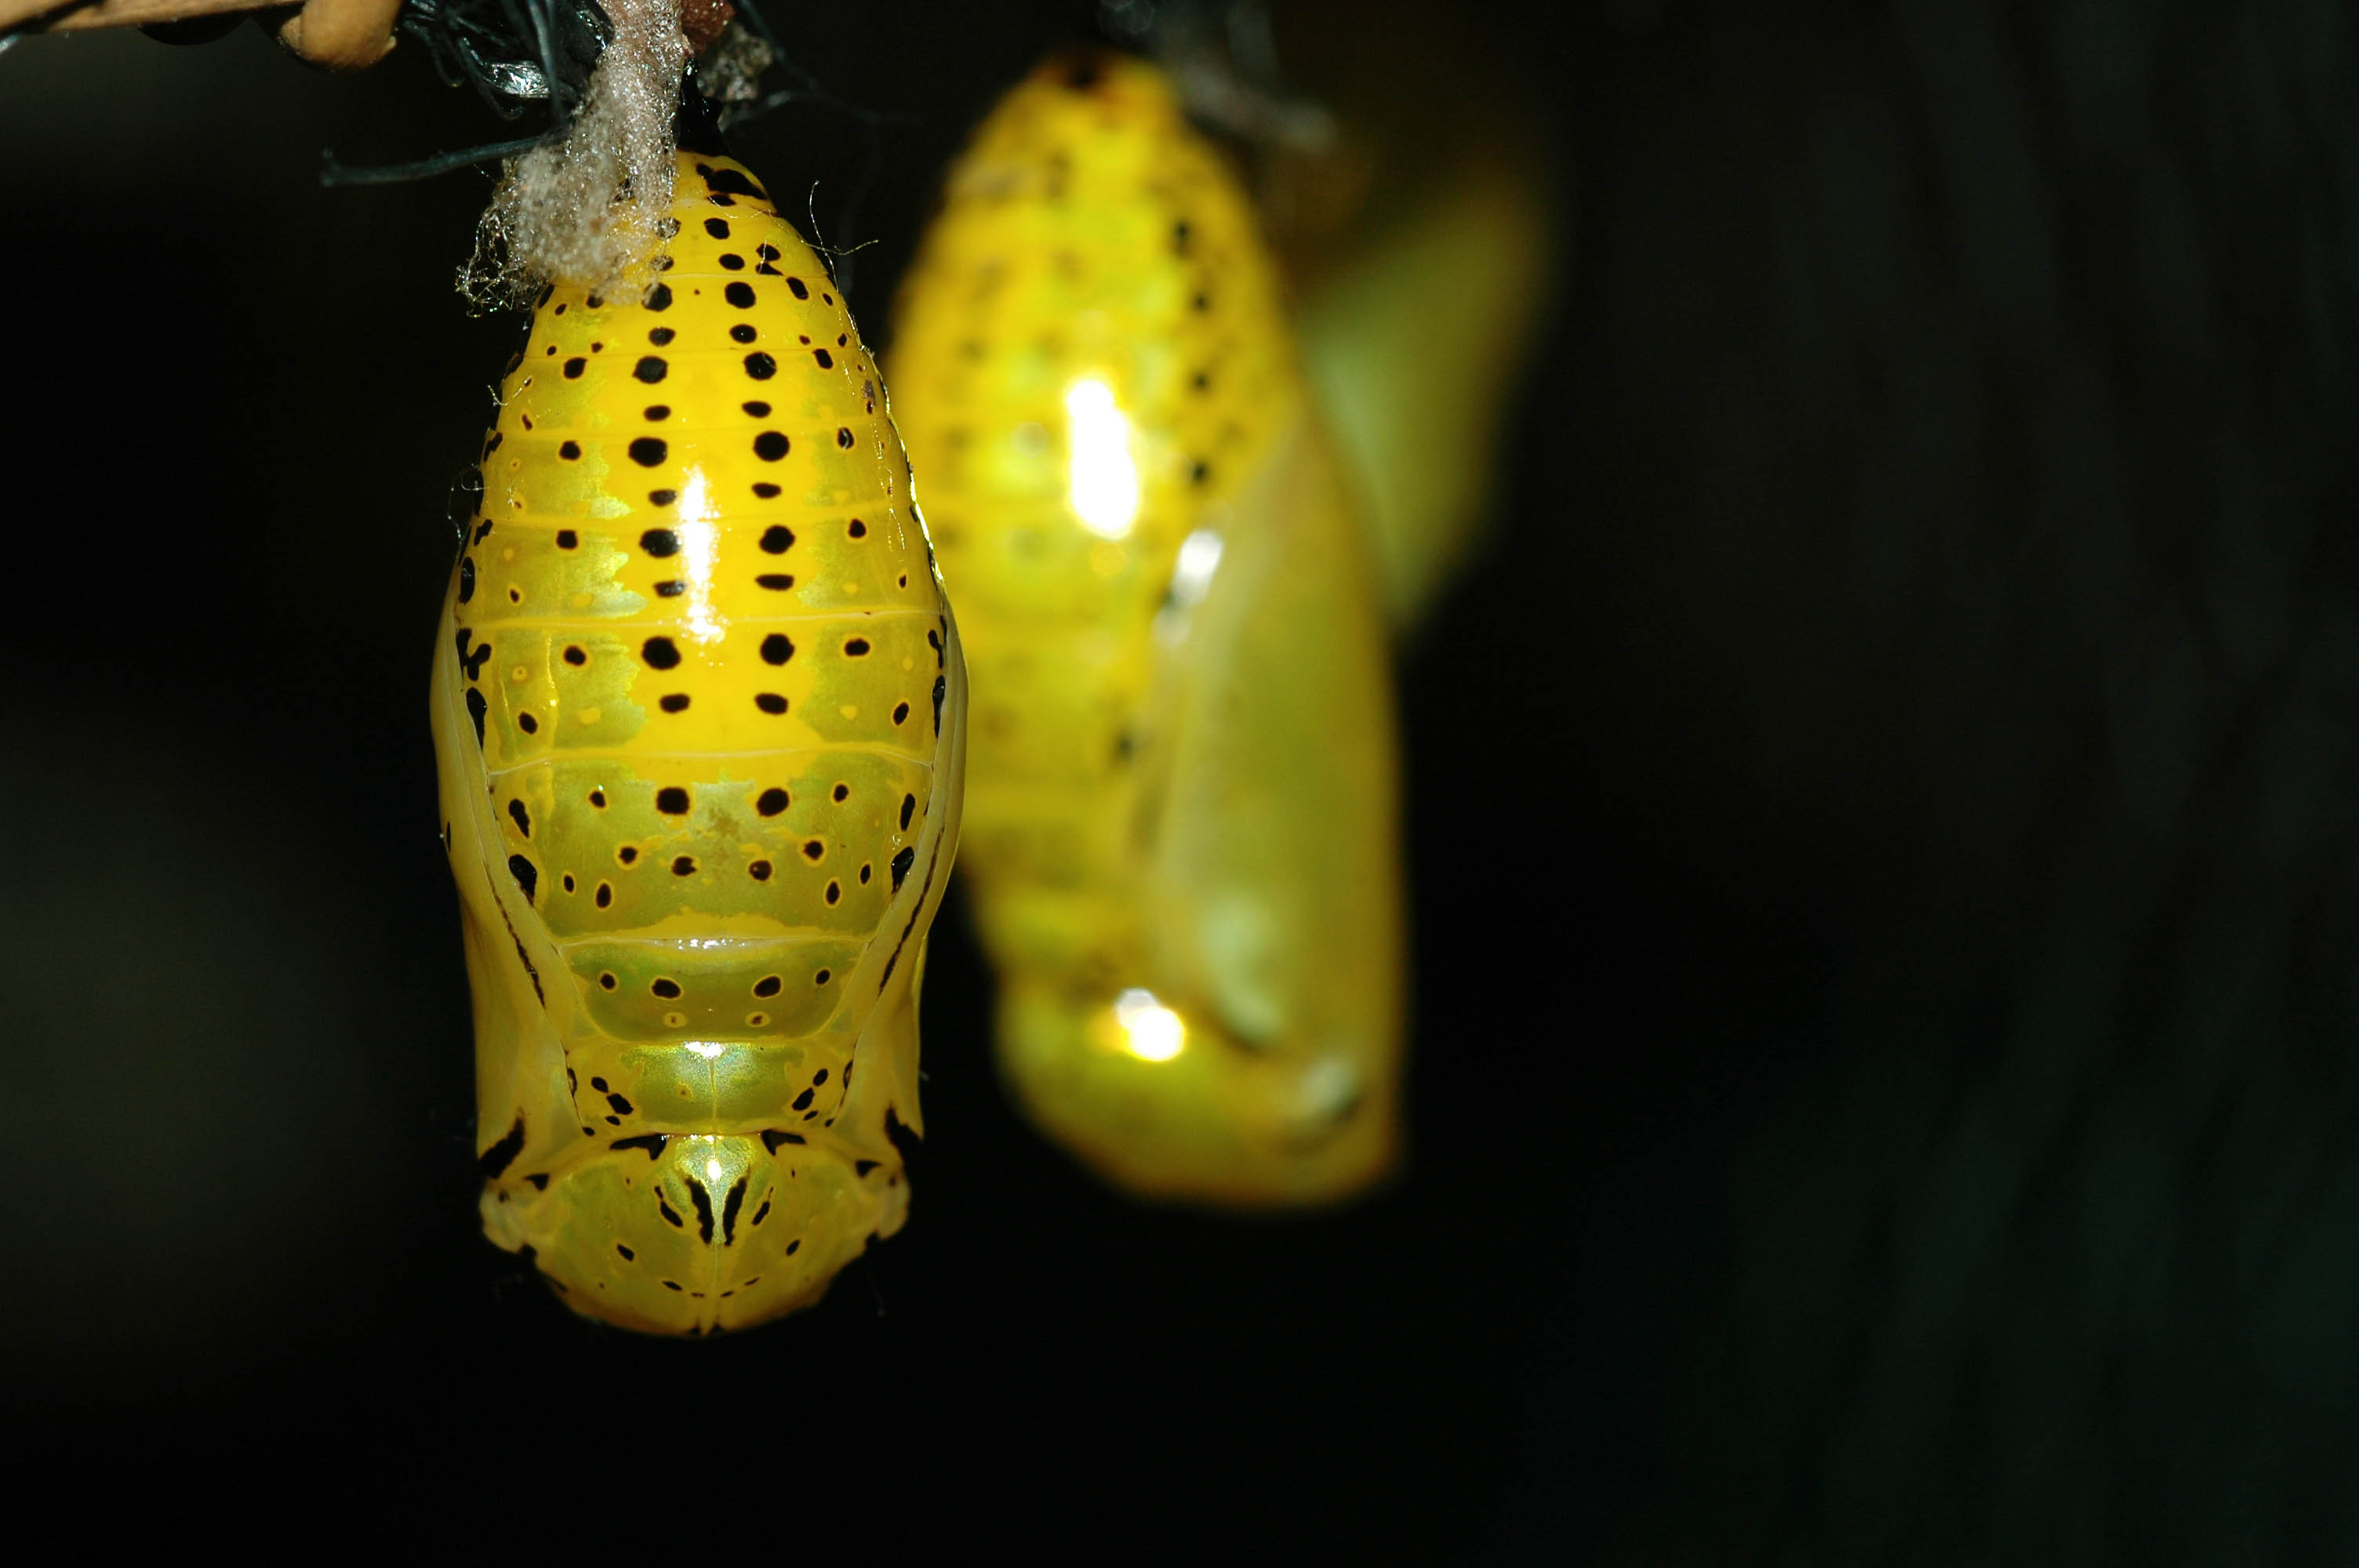 オオゴマダラの幼虫から特徴まで 虫の写真と生態なら昆虫写真図鑑 ムシミル